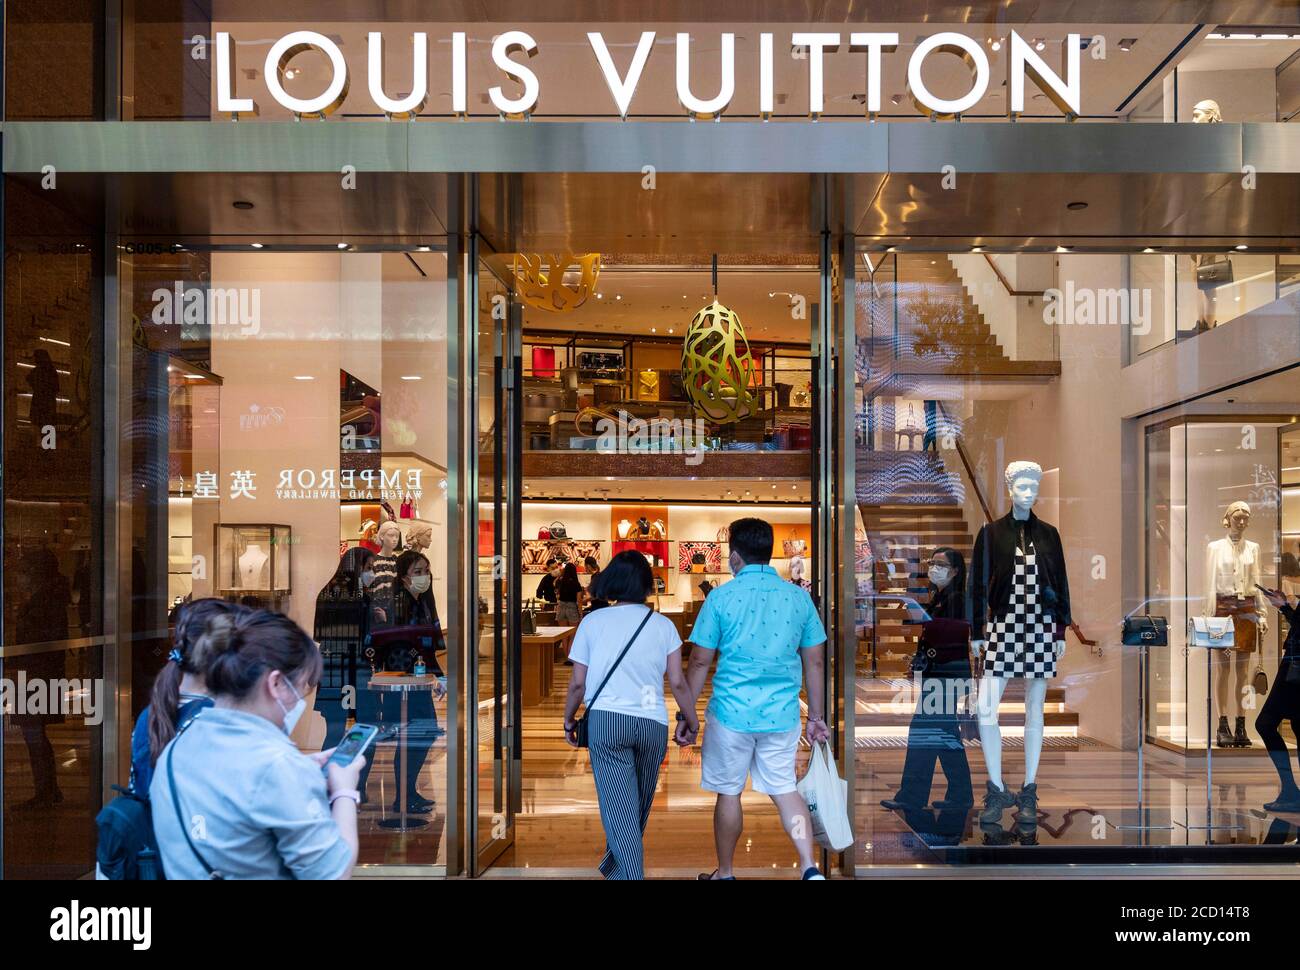 Louis Vuitton store – Stock Editorial Photo © teamtime #107059742